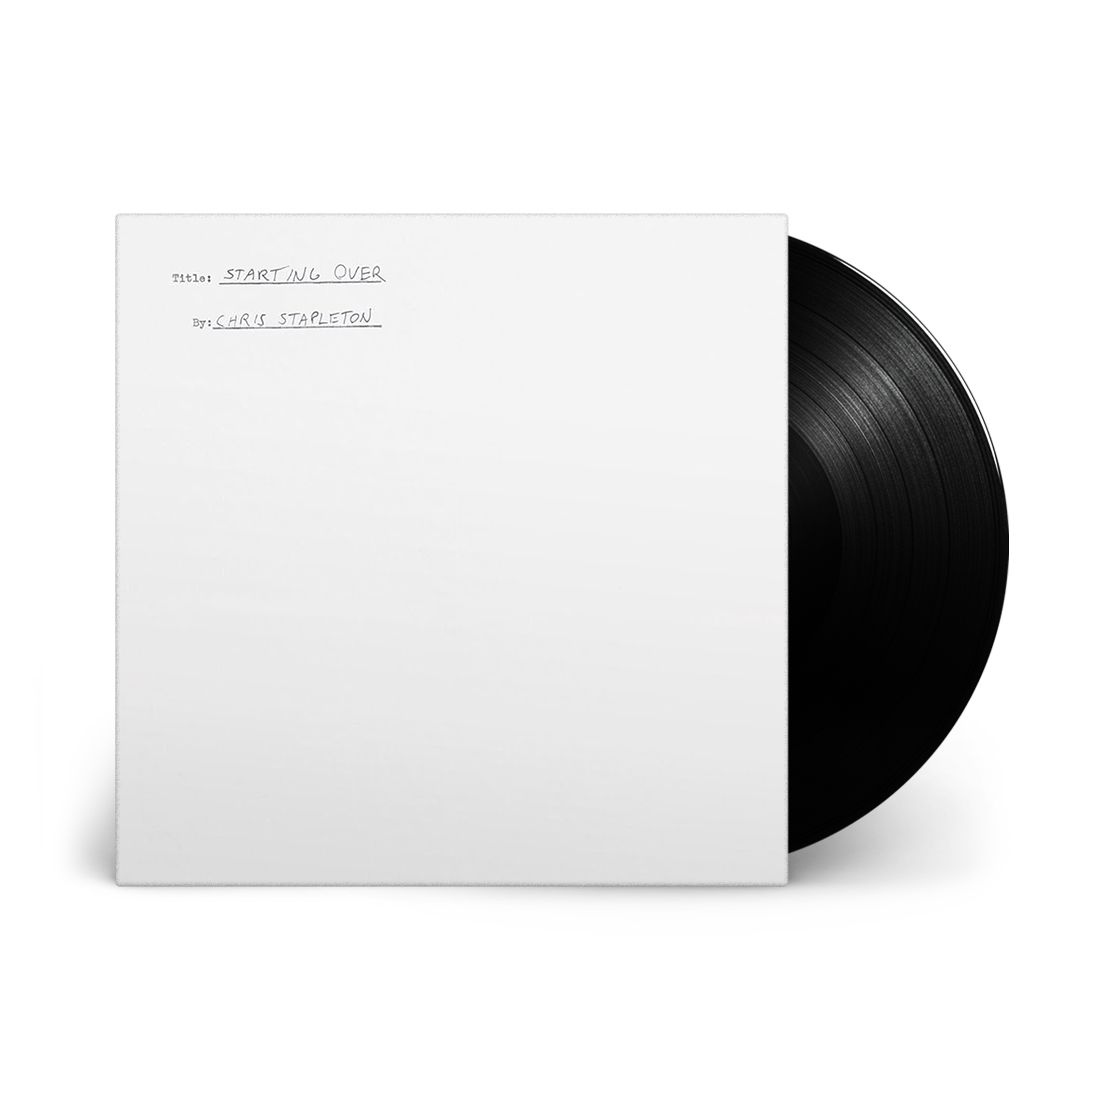 Chris Stapleton - Starting Over: Vinyl LP